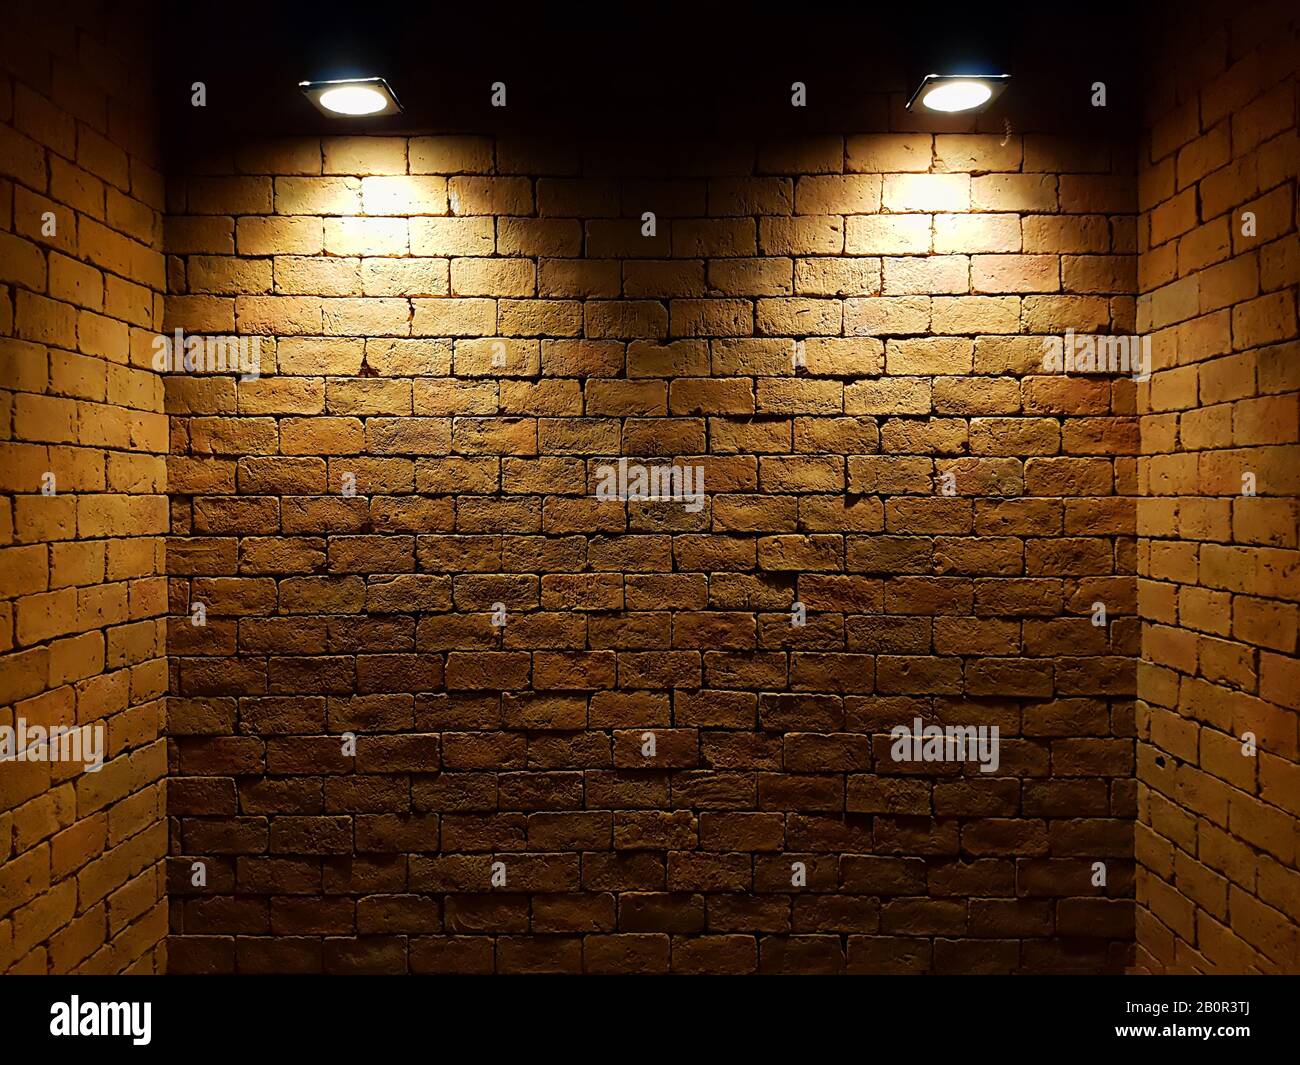 mur de briques vieux abstrait dans l'obscurité avec deux projecteurs, ton clair chaud. mur de briques dans la pièce vide. fond de mur de briques pour le papier peint Banque D'Images